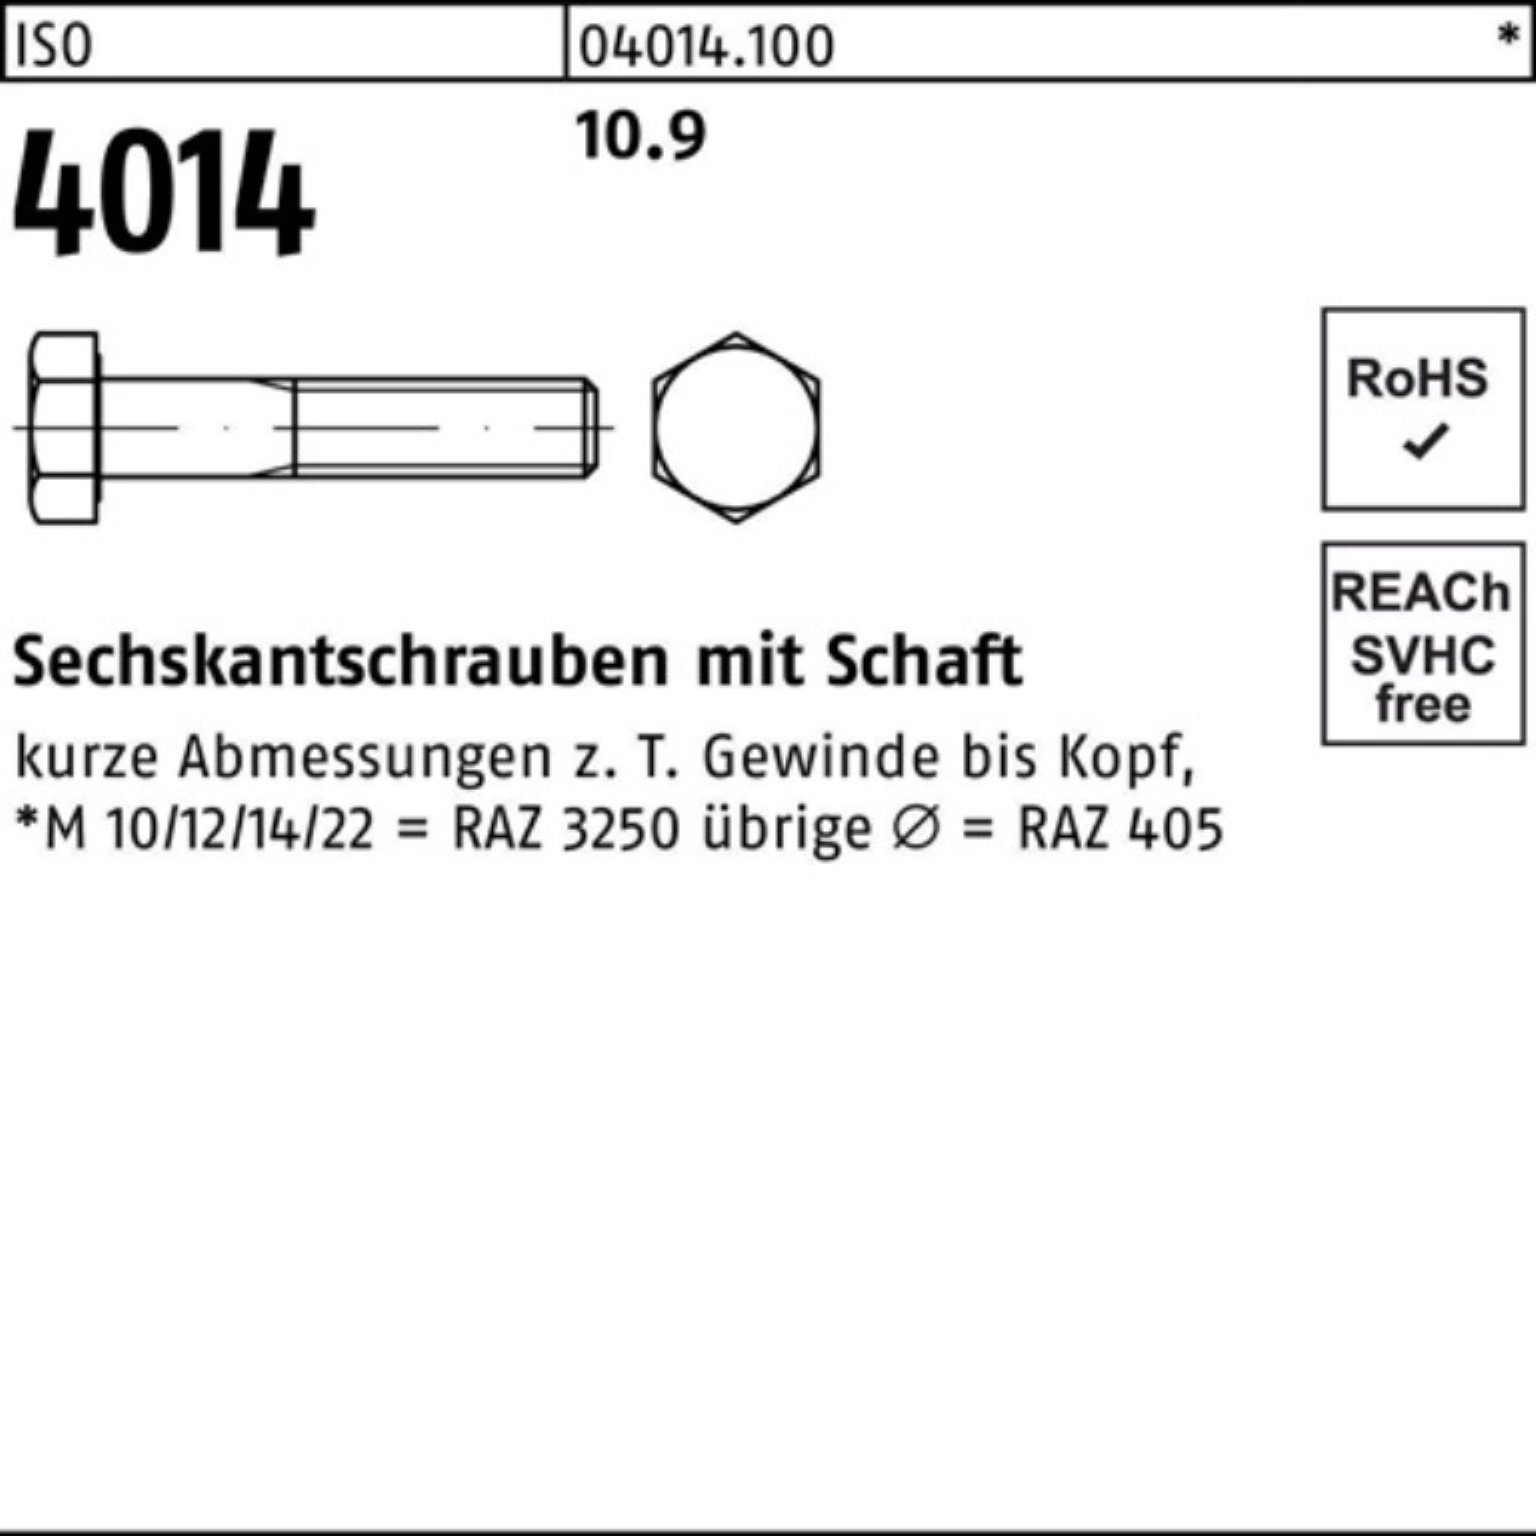 Pack 4014 10.9 160 I Sechskantschraube Bufab ISO Sechskantschraube Stück 100er Schaft M12x 25